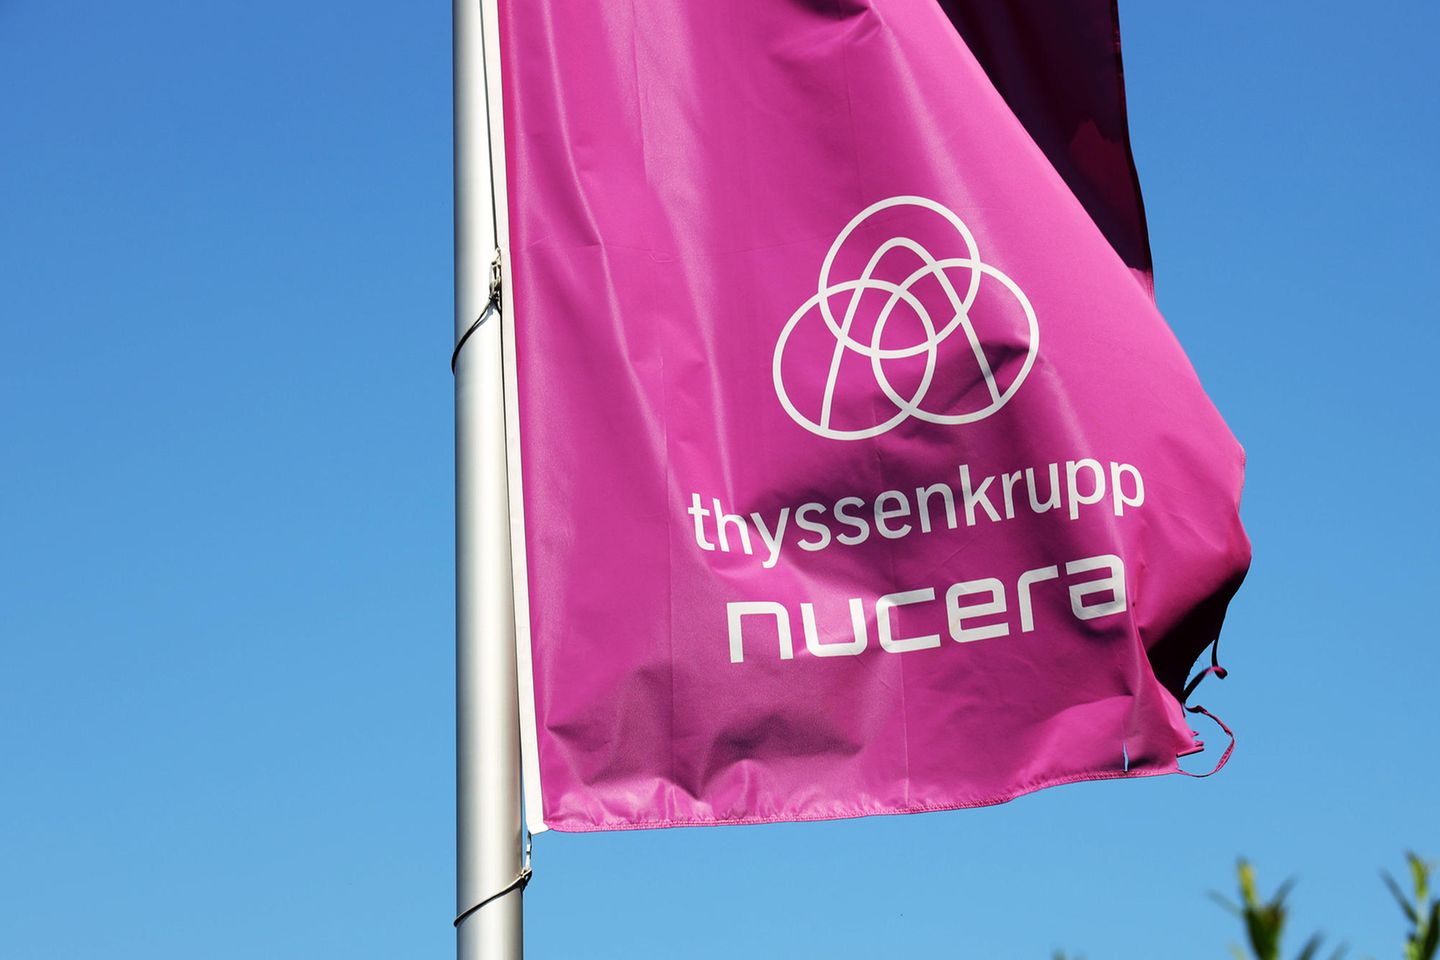 Die Thyssenkrupp-Wasserstoffsparte Nucera hat am Freitag ein fulminantes Börsendebüt hingelegt